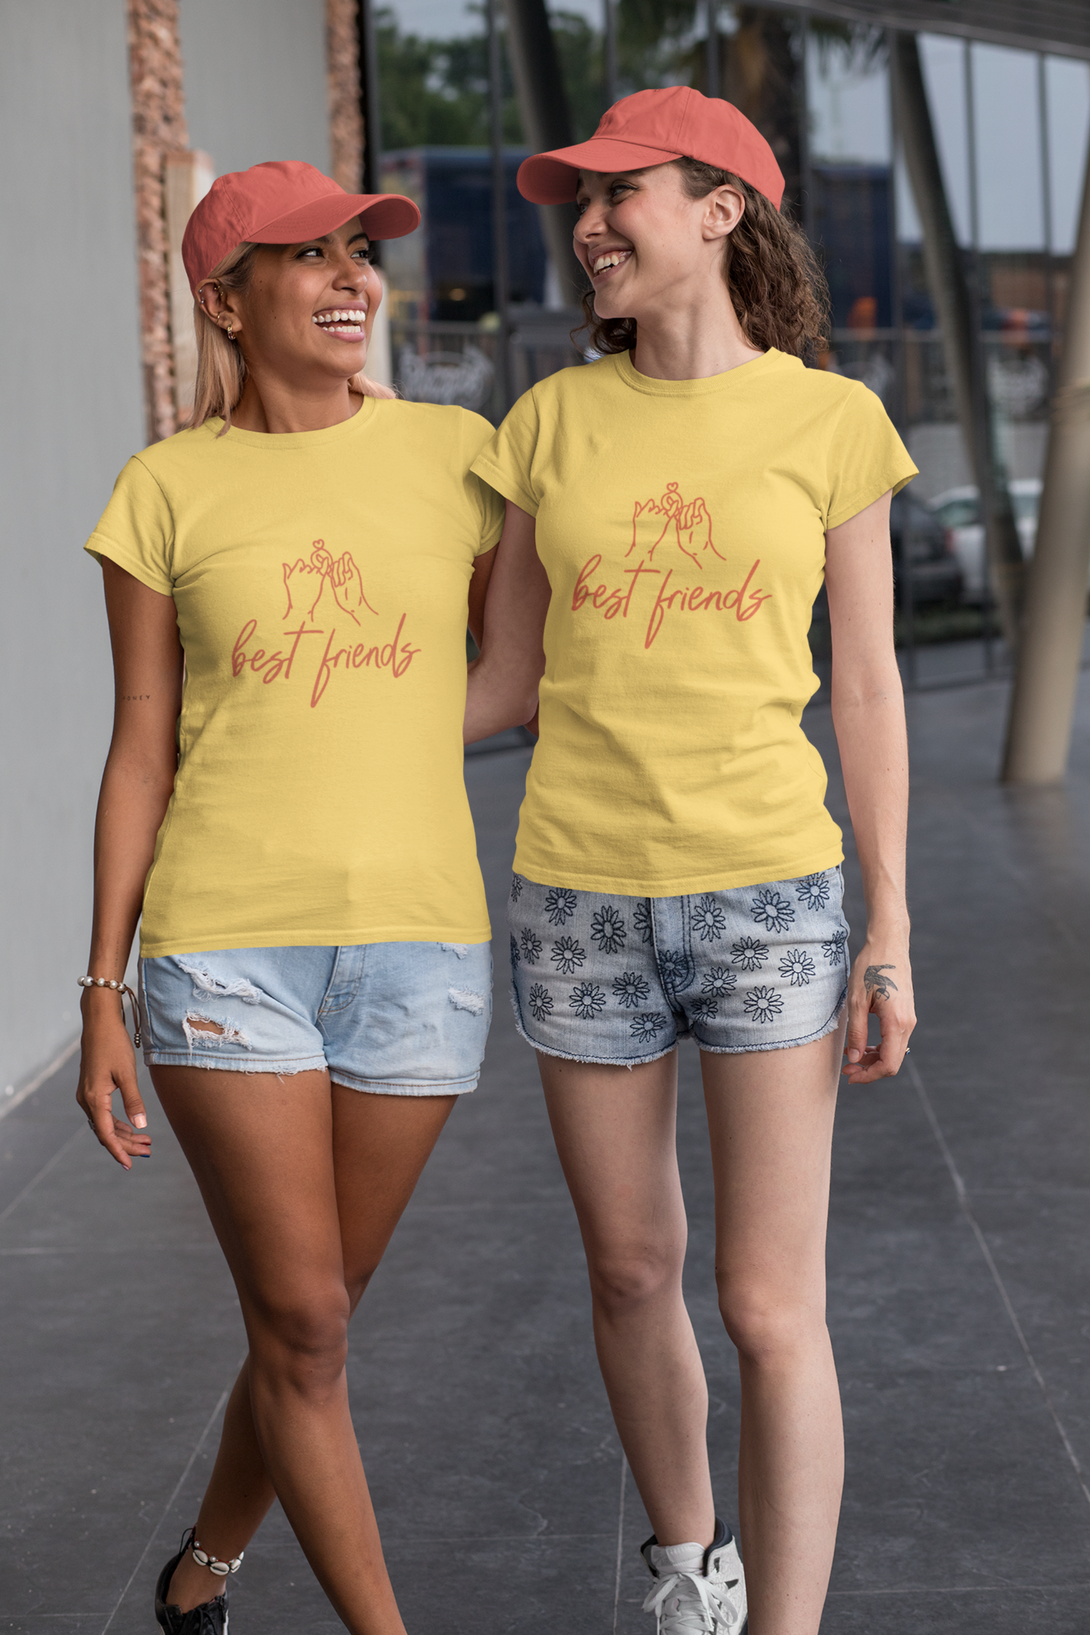 Best Friends Printed T-Shirt For Women - WowWaves - 2